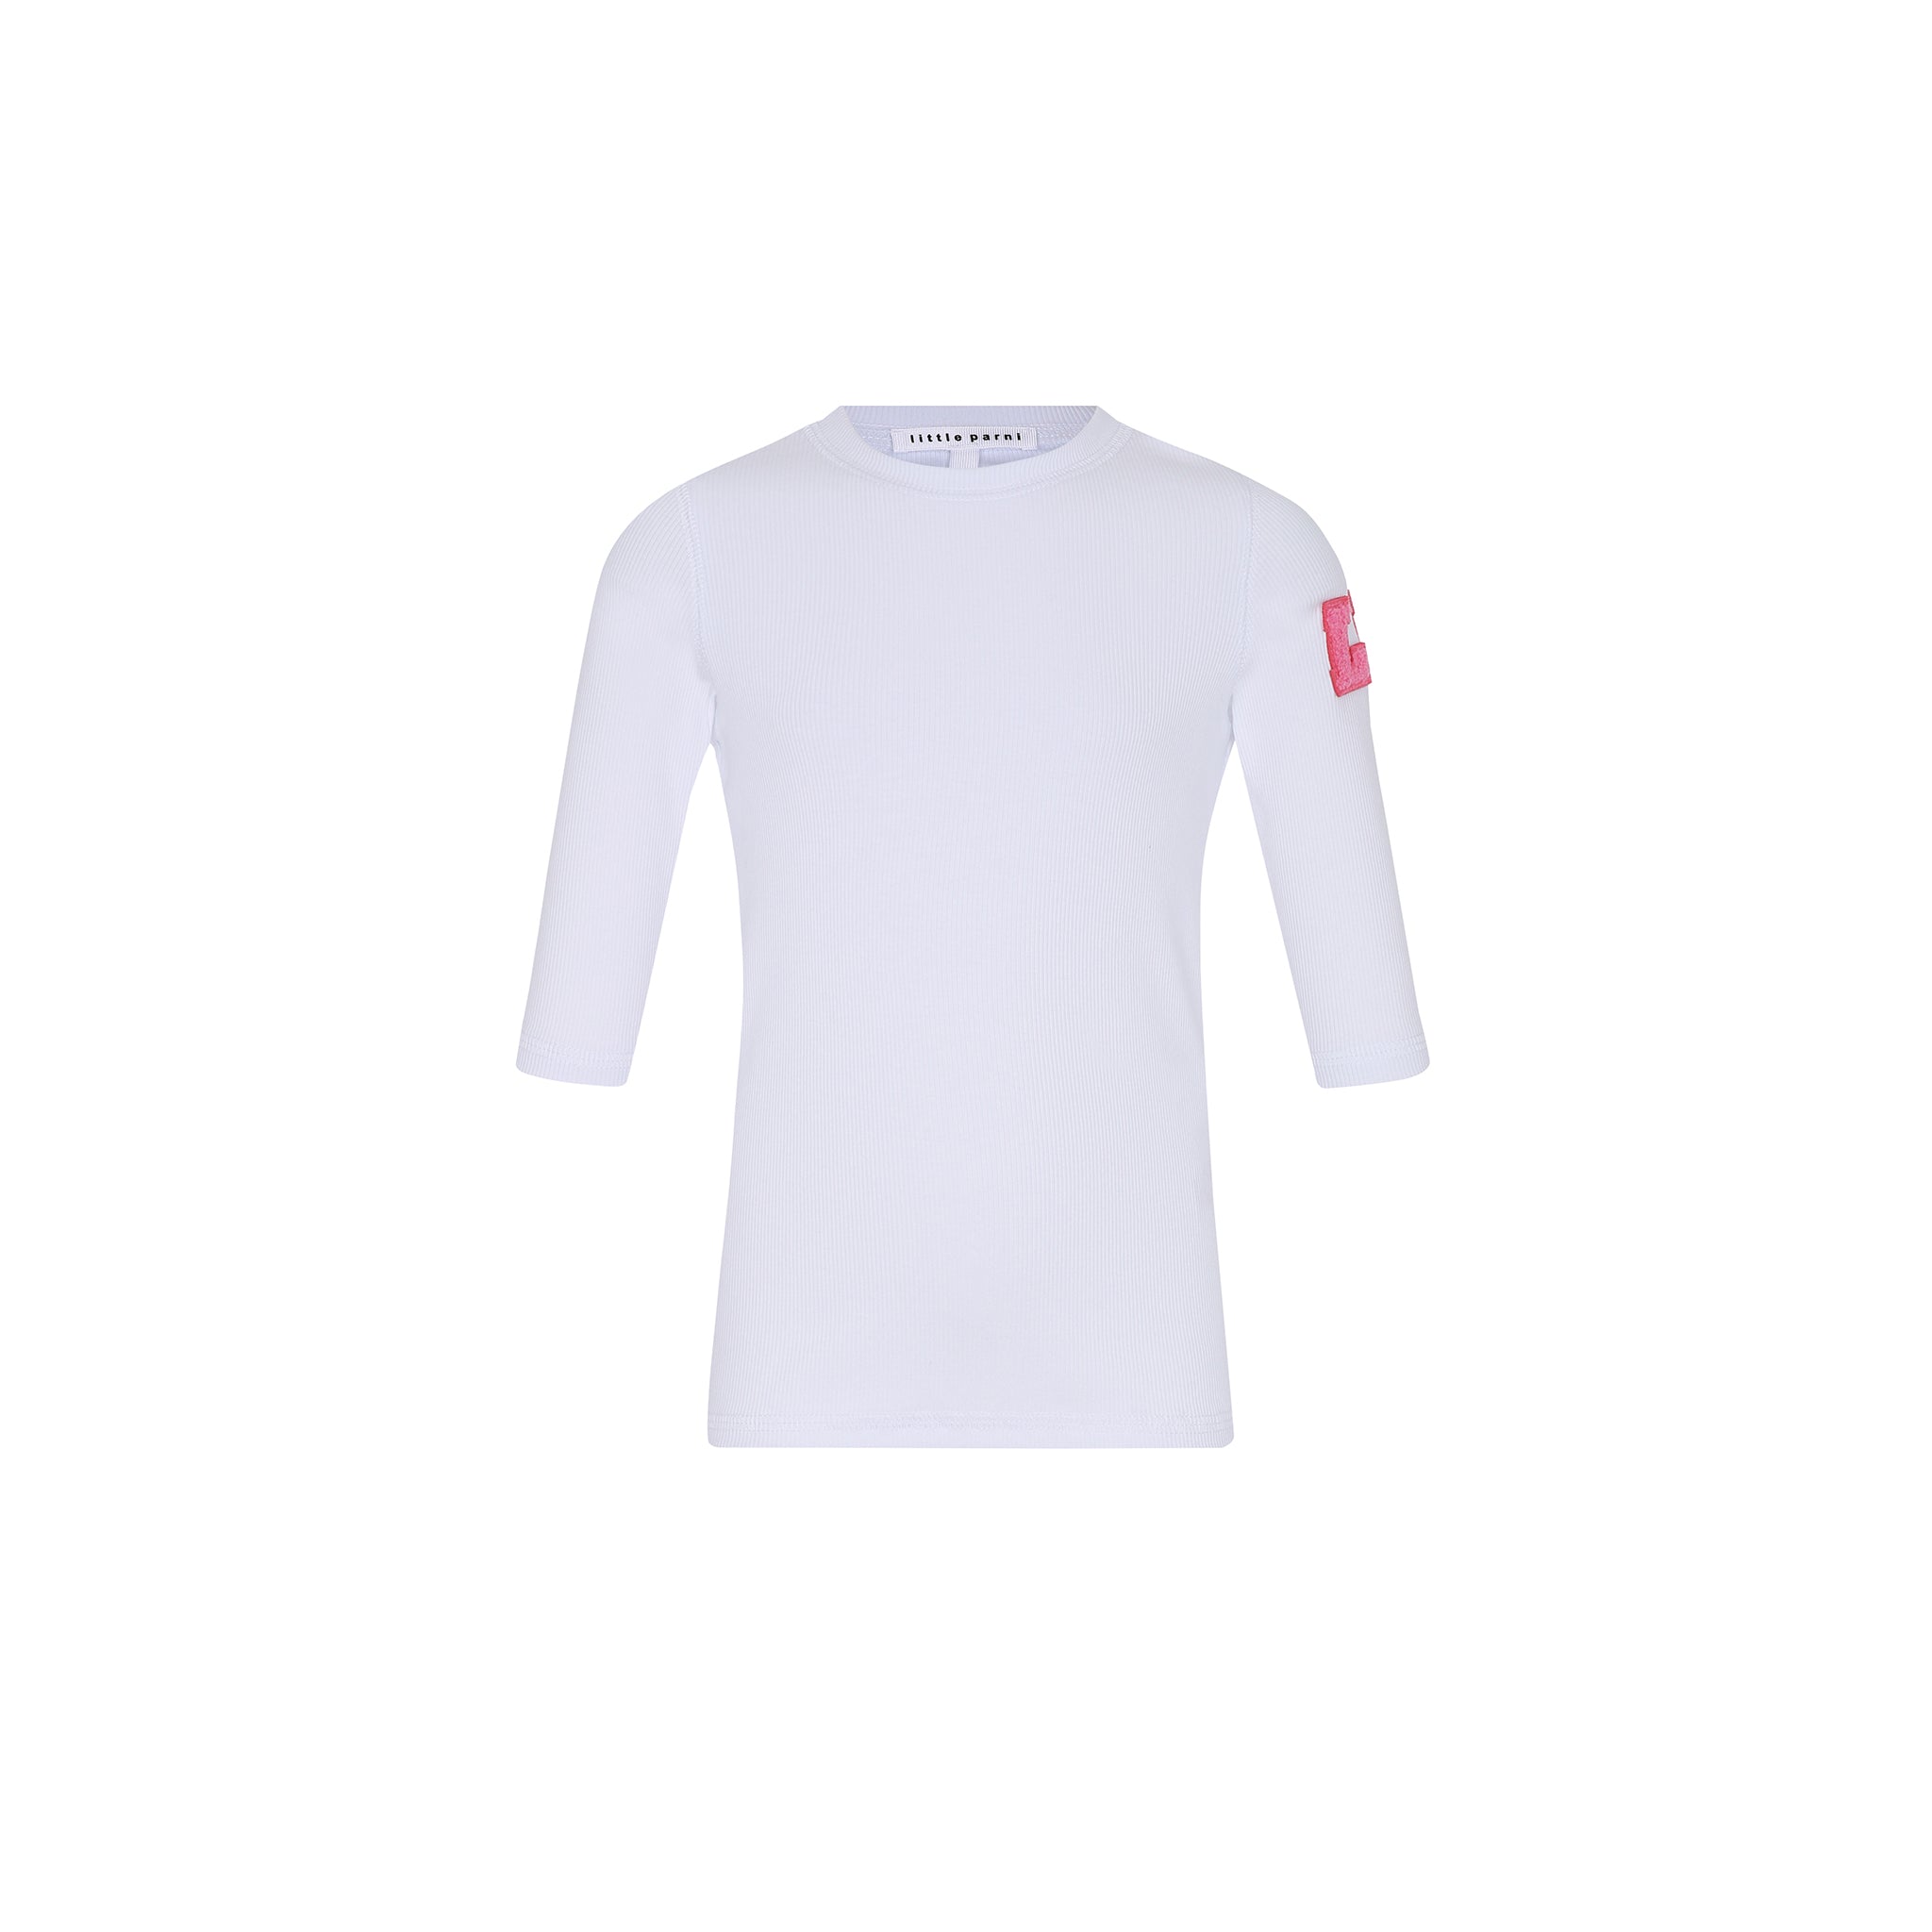 White/Hot Pink Logo Shirt